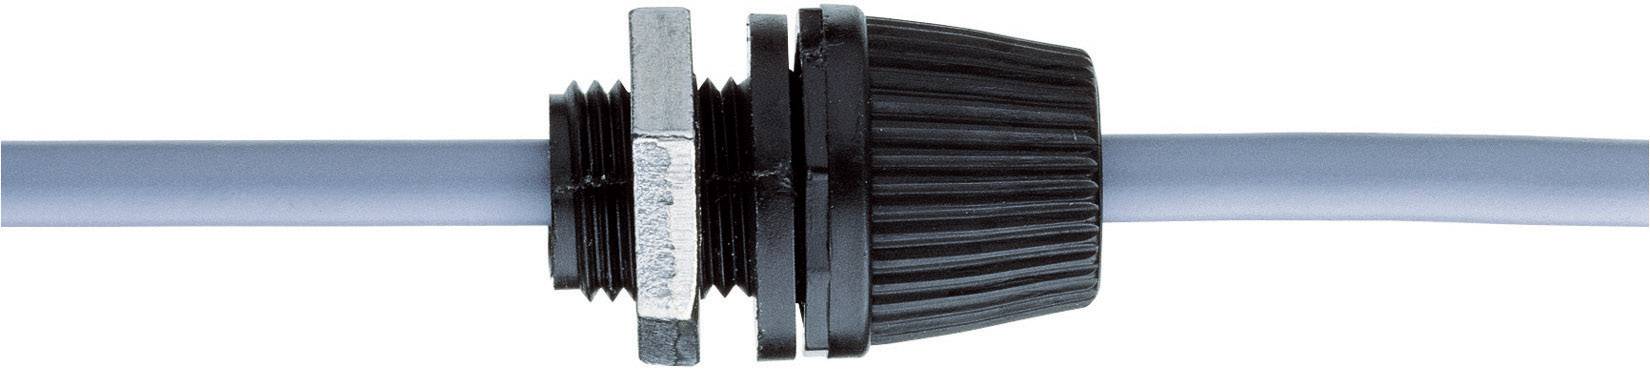 Donau Elektronik 527190 Kabelverschraubung mit Zugentlastung M10 Polyamid  Schwarz 1 St. kaufen